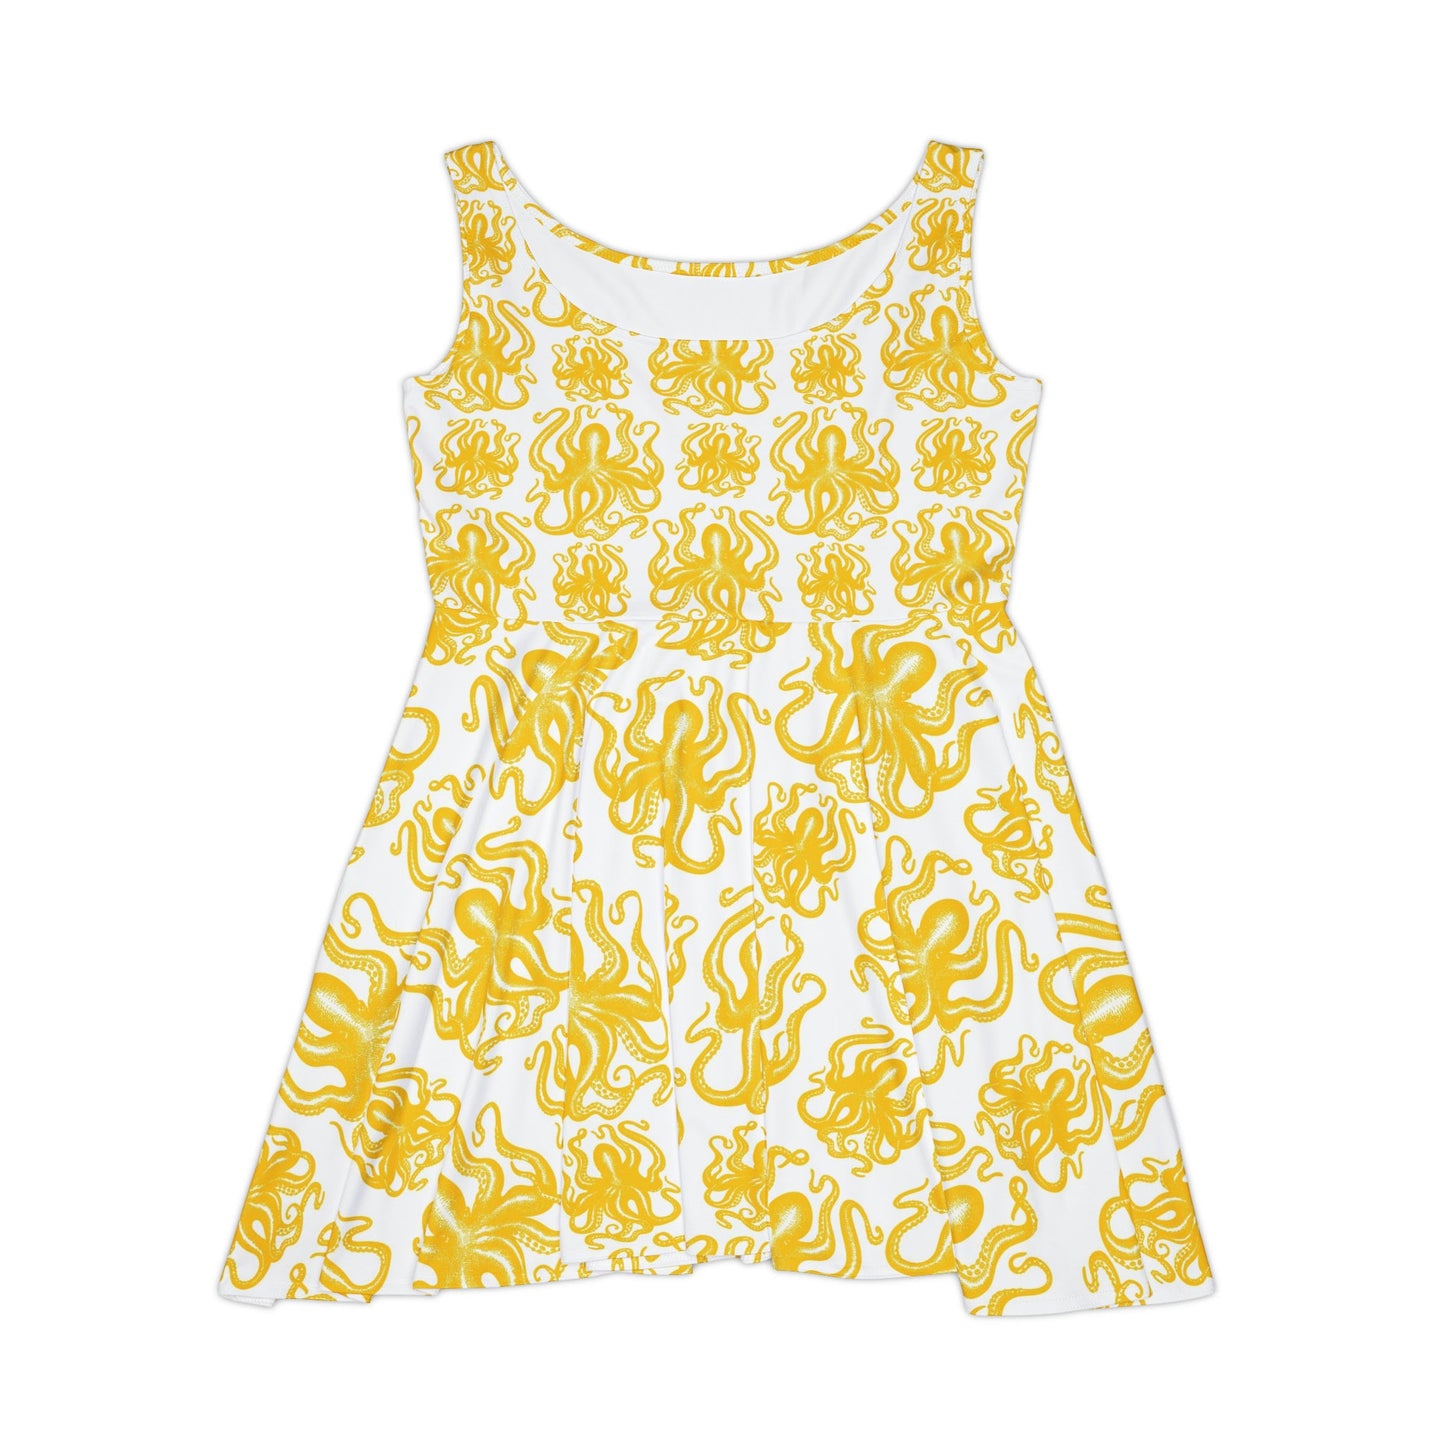 Yellow Octopus Art Skater Dress, Octopus print Dress, Beach-themed Dress, Women's Yellow Flowy Flared Dress, Womens Summer Dress